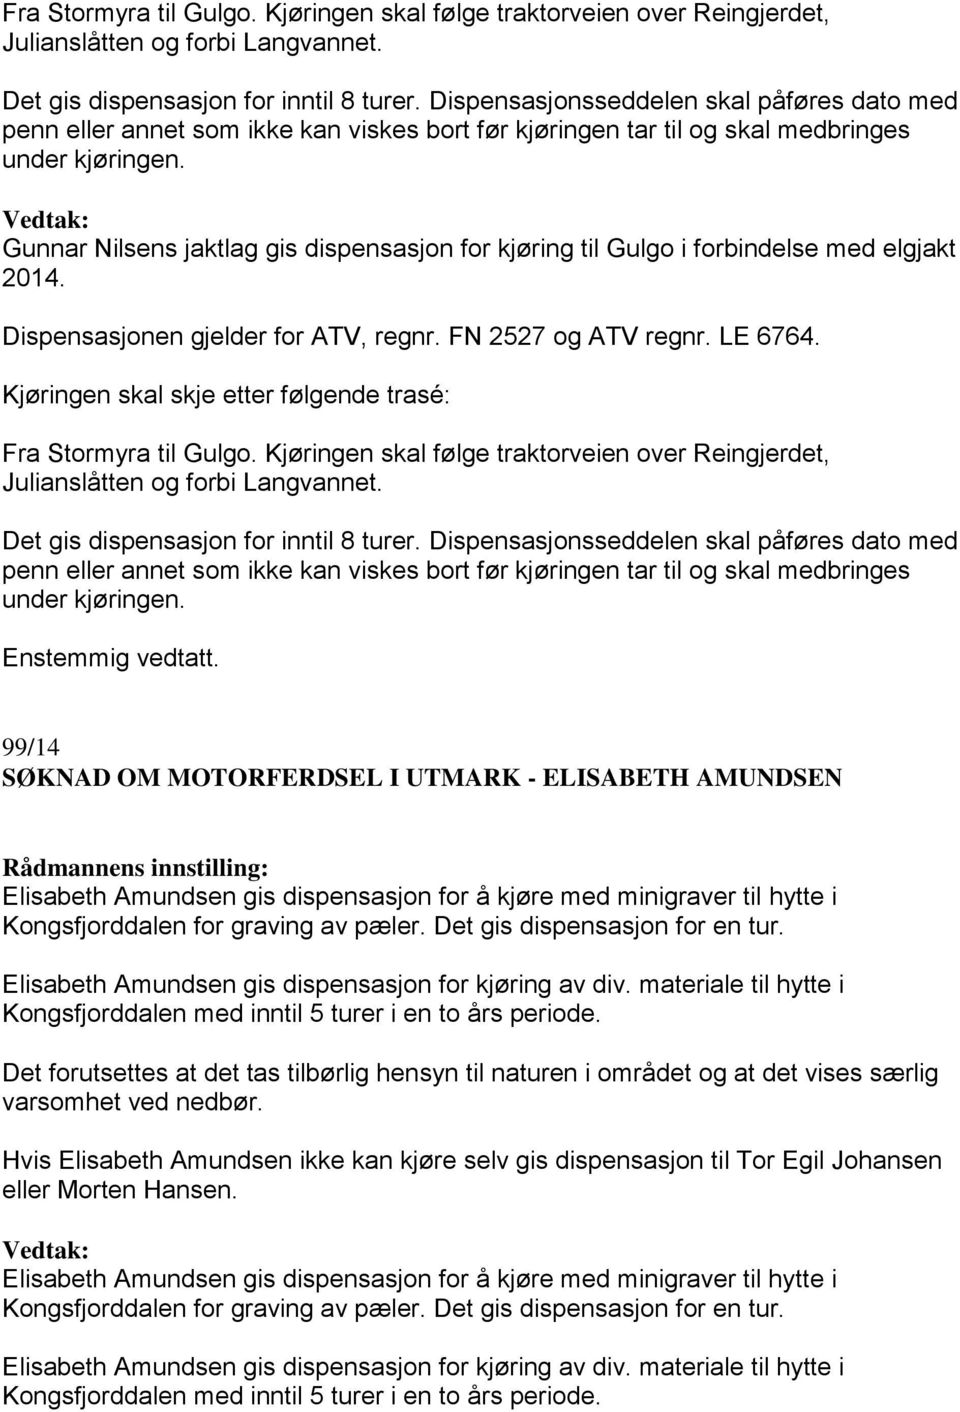 Gunnar Nilsens jaktlag gis dispensasjon for kjøring til Gulgo i forbindelse med elgjakt 2014. Dispensasjonen gjelder for ATV, regnr. FN 2527 og ATV regnr. LE 6764.